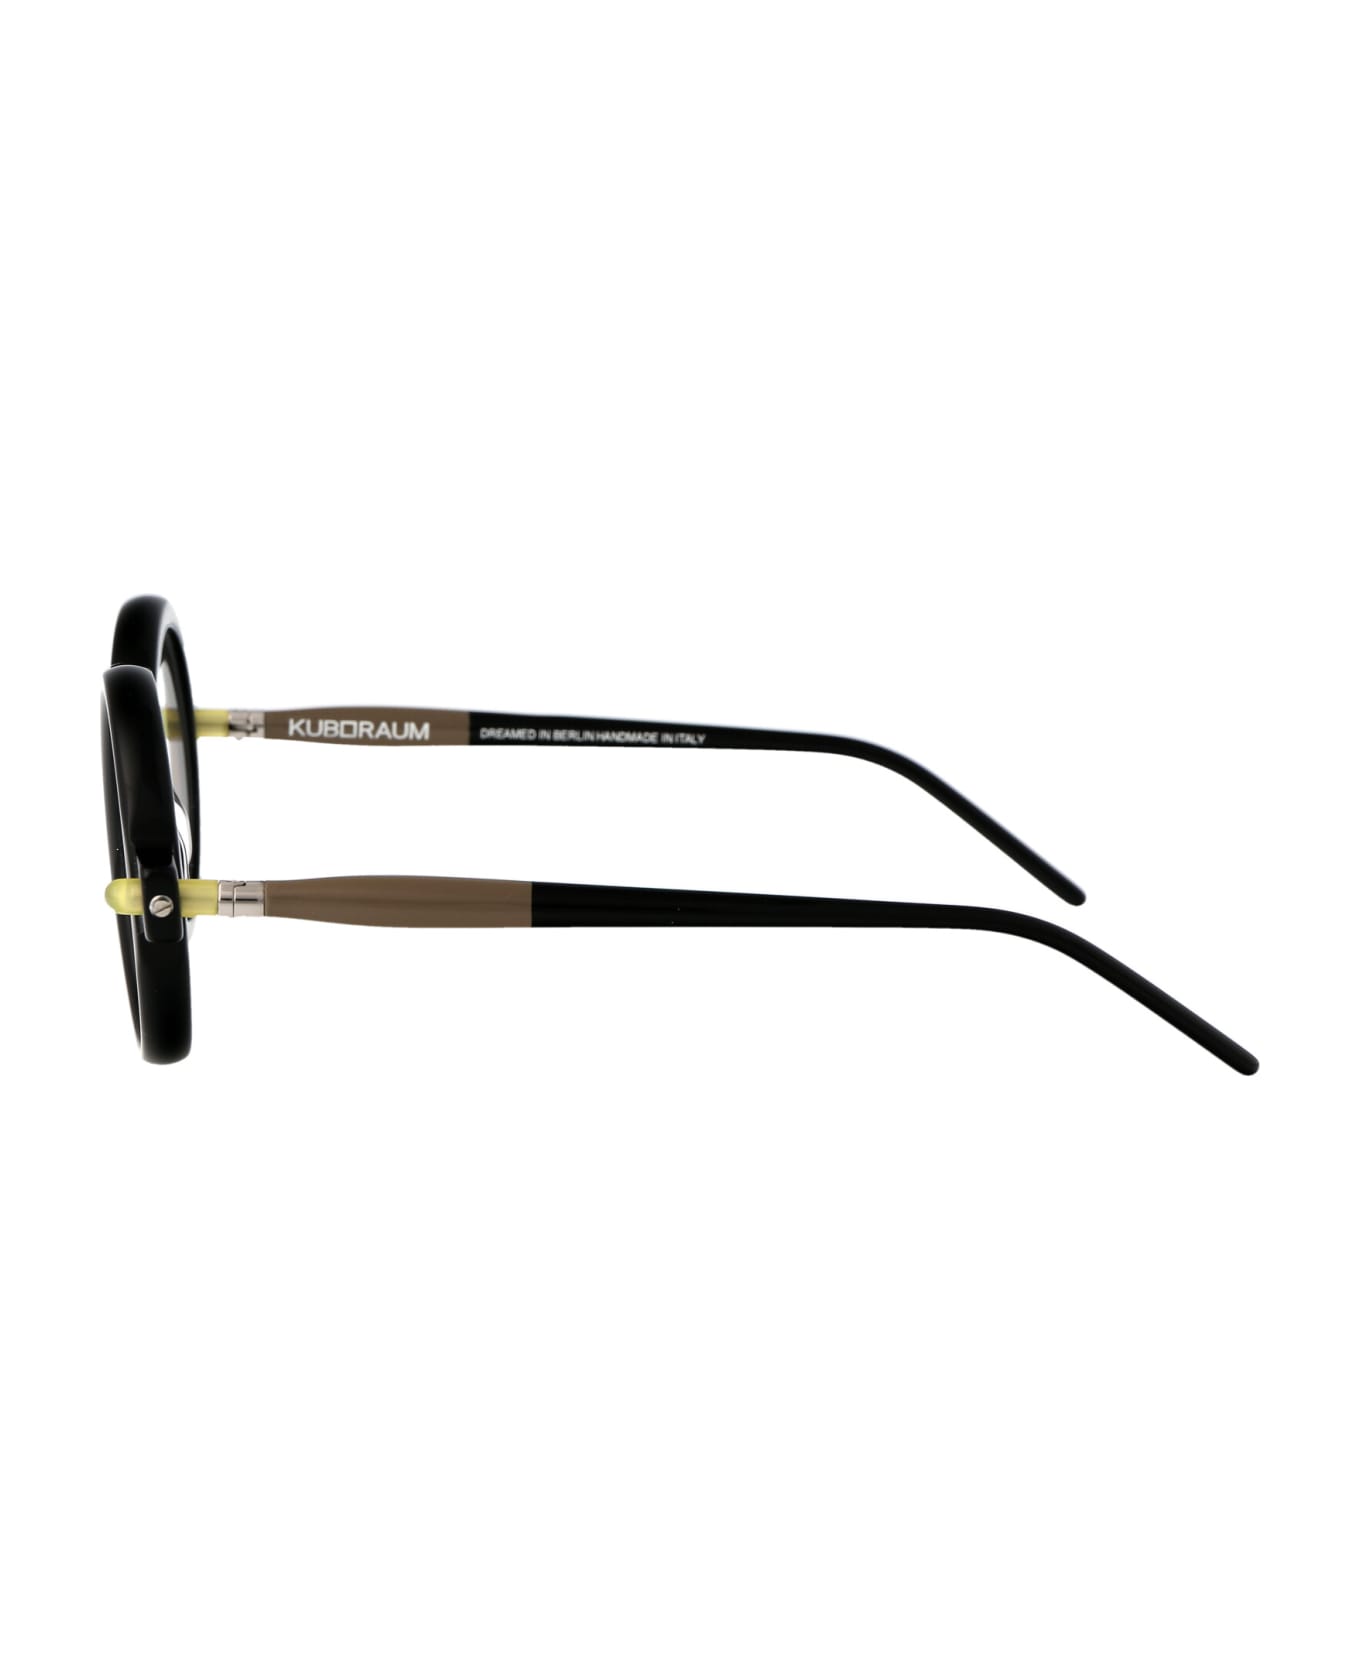 Kuboraum Maske P1 Glasses - BSK アイウェア